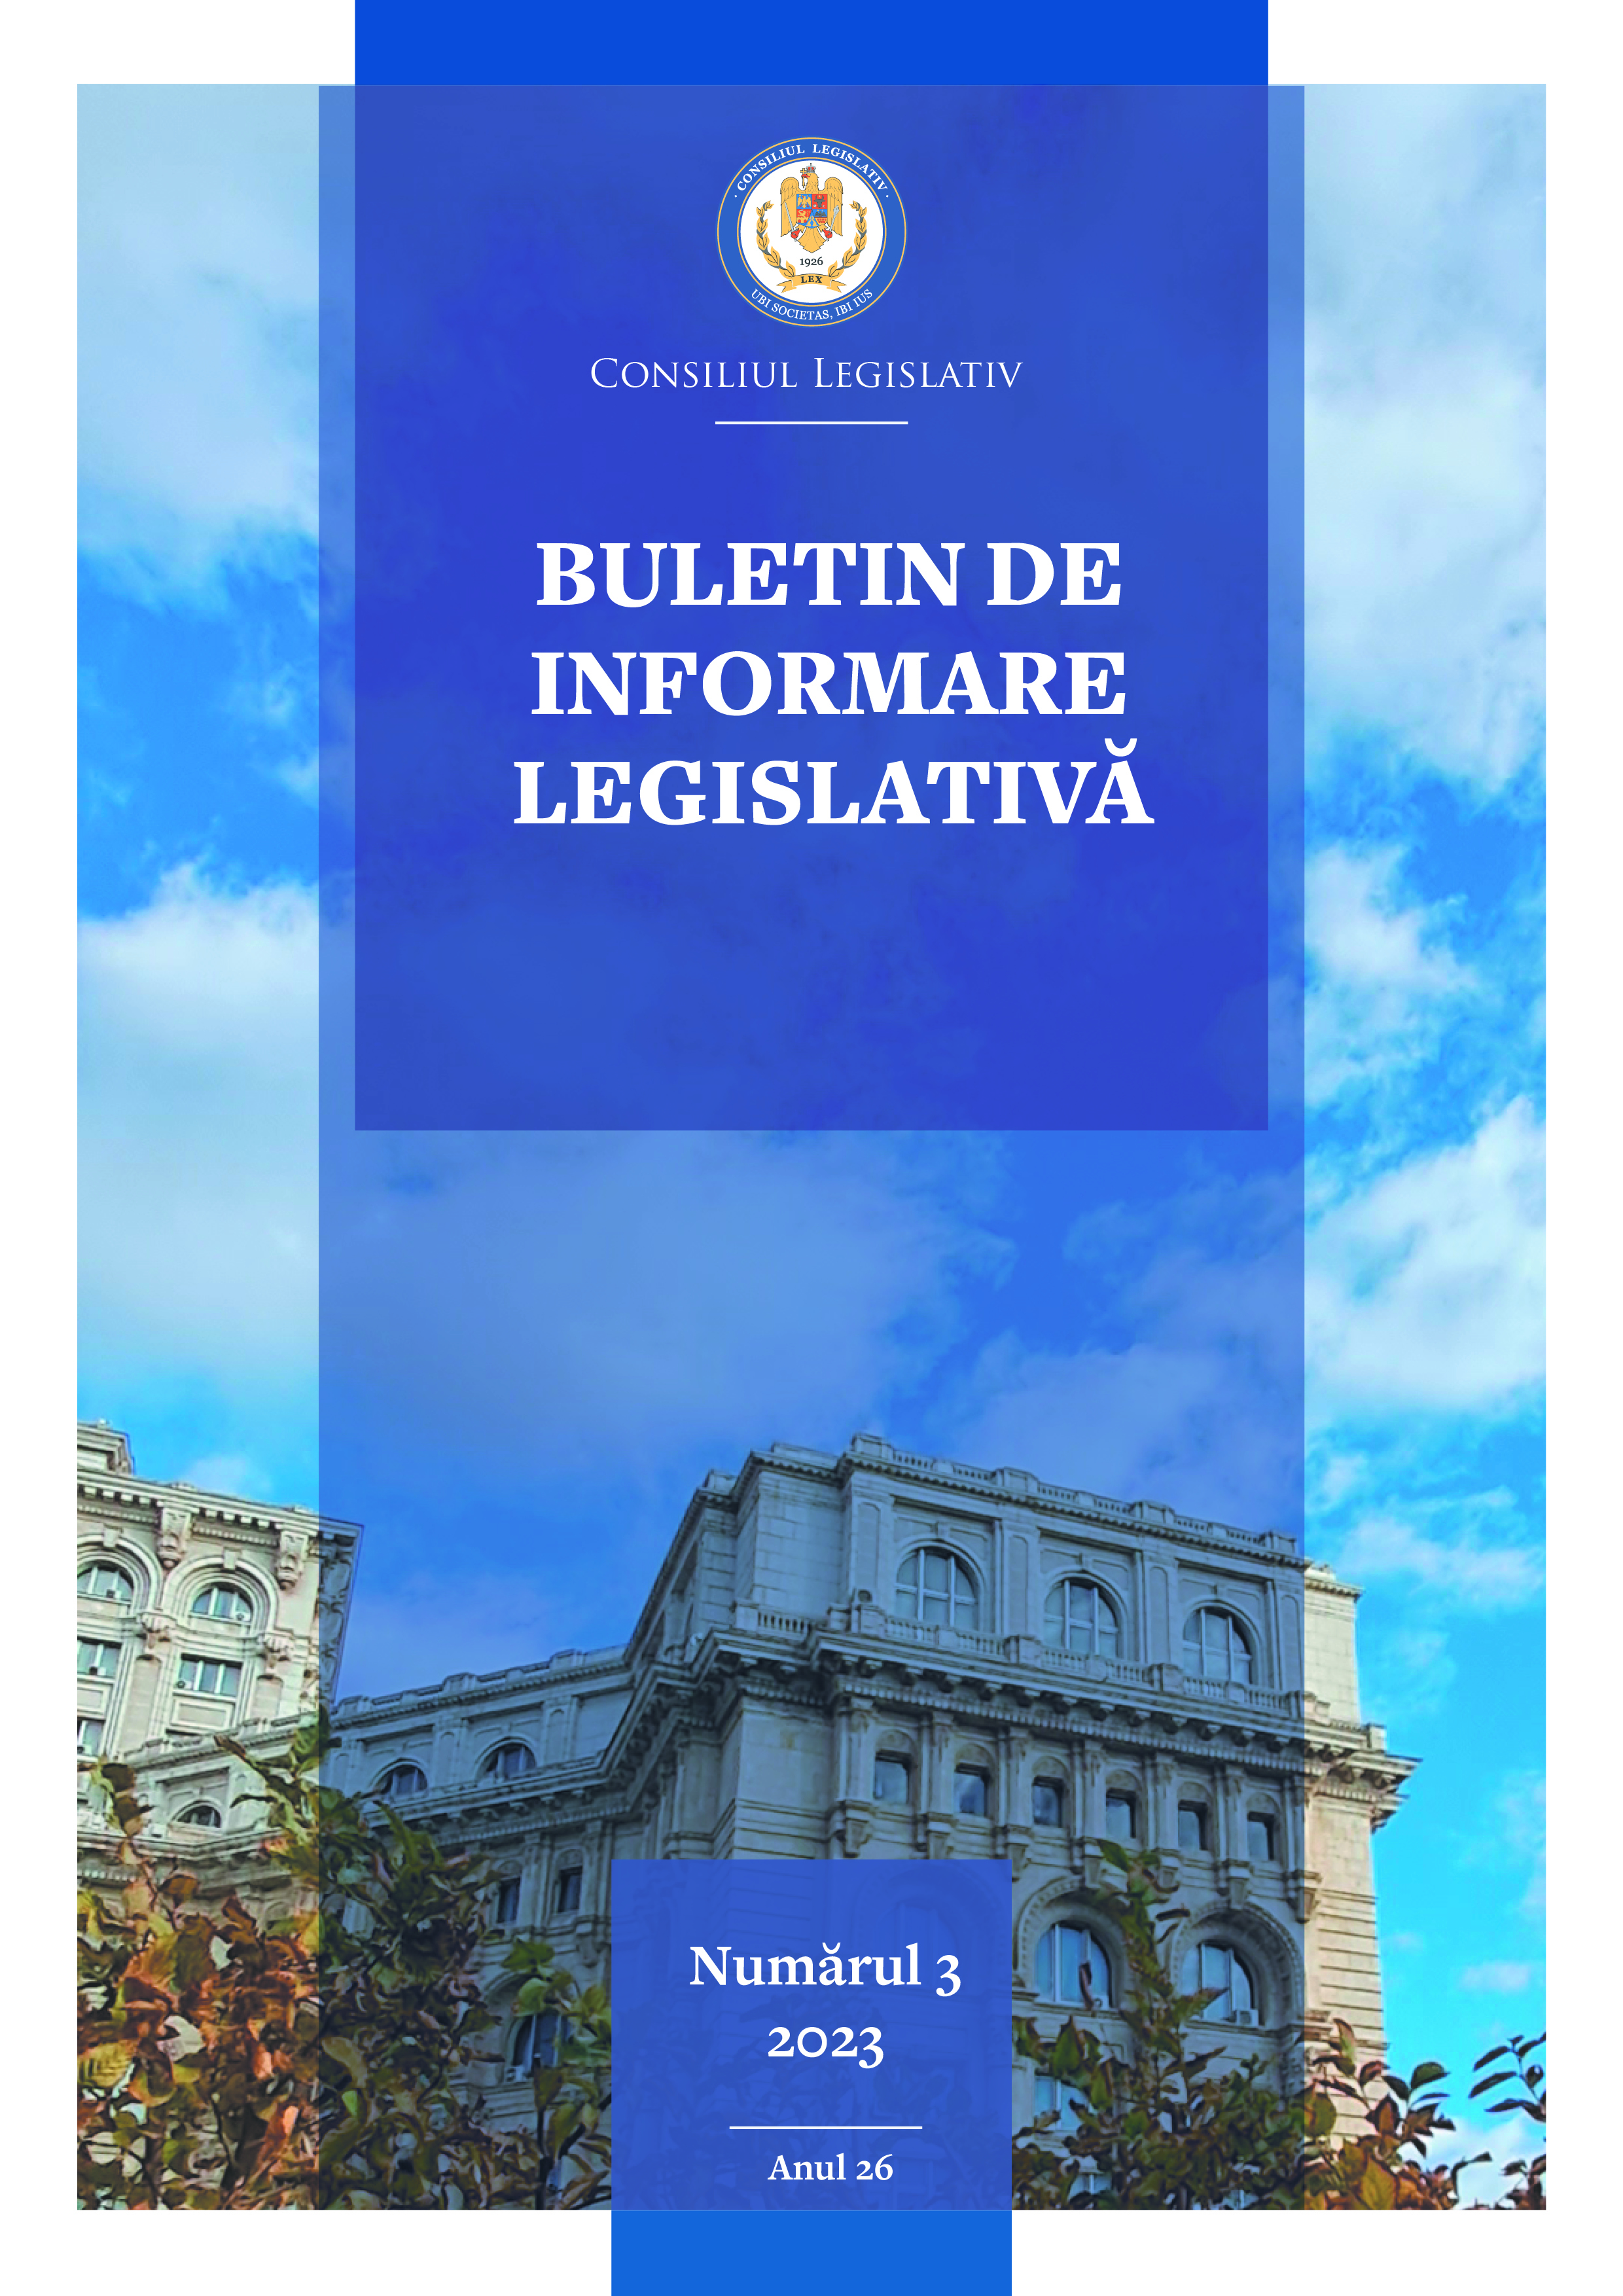 Raport asupra activității desfășurate de Consiliul Legislativ în anul 2022